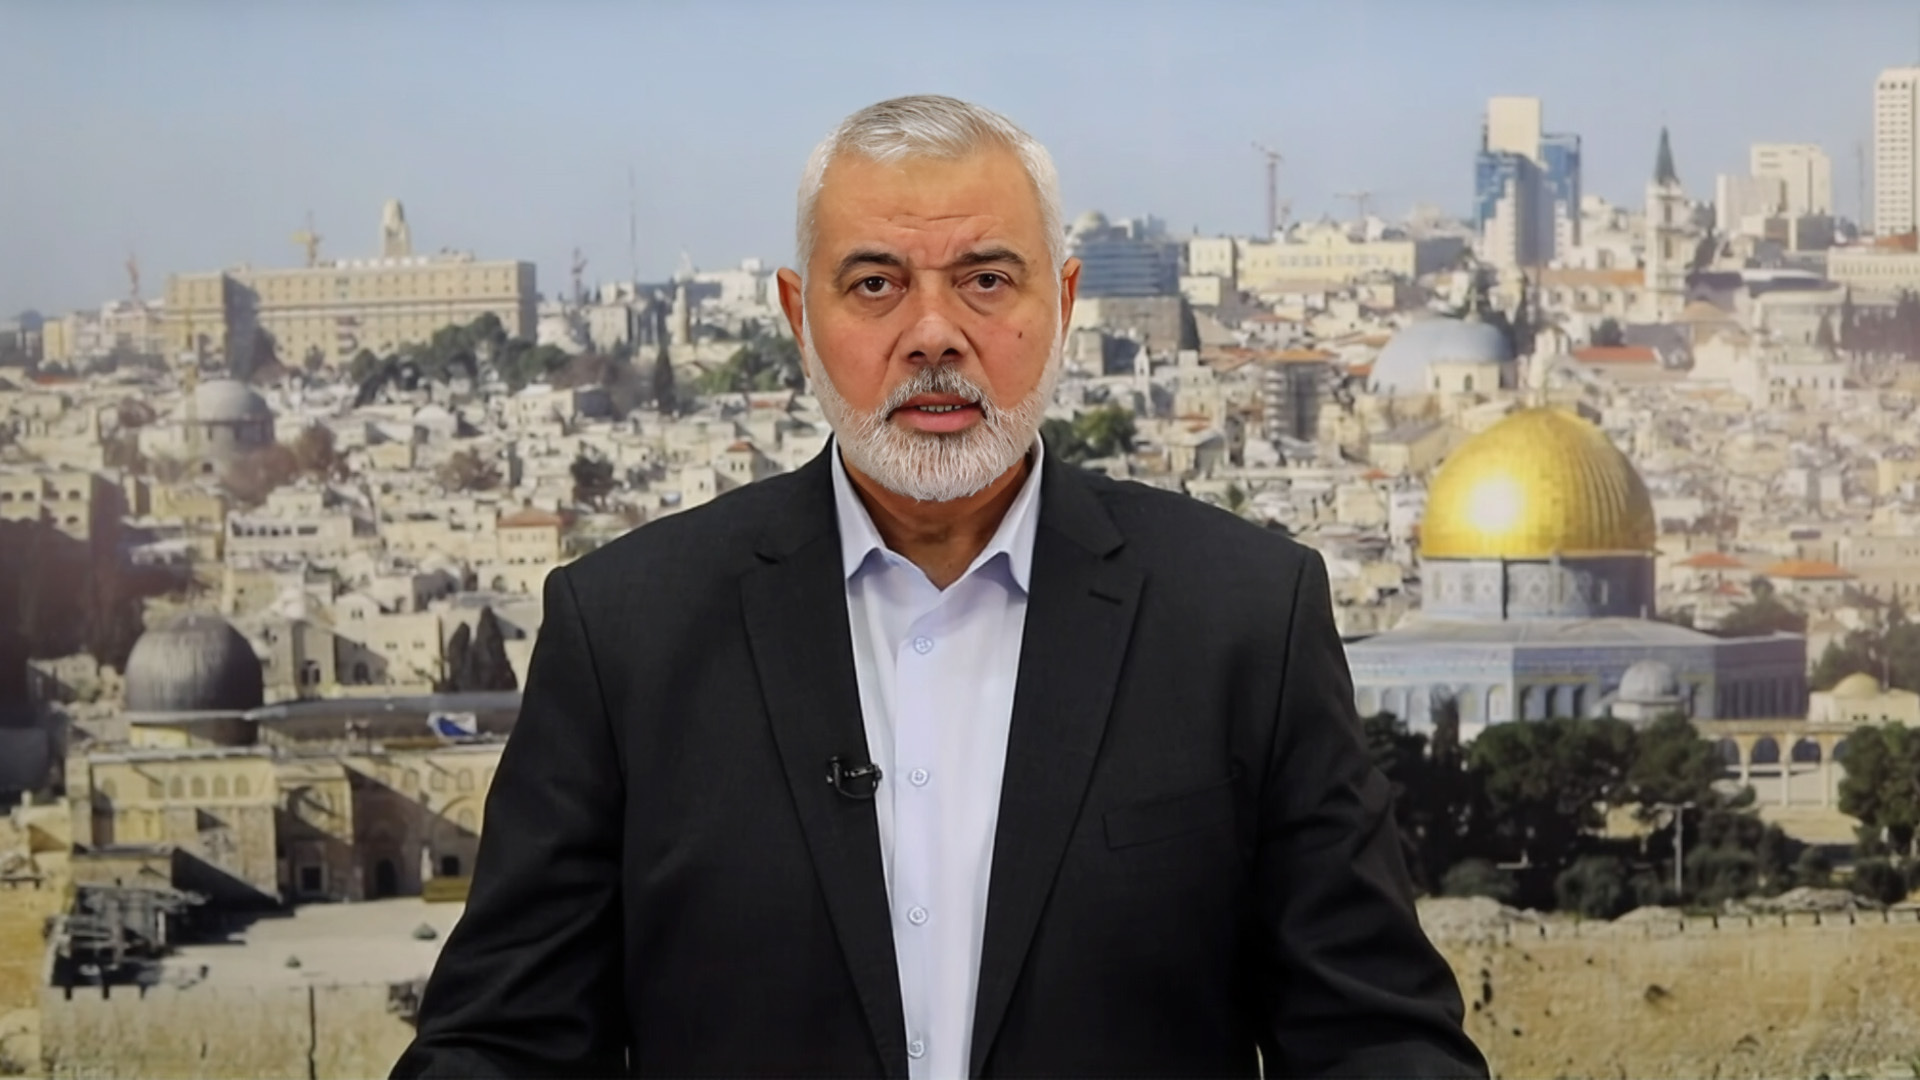 هنية: حماس قدمت تصورا شاملا لوقف العدوان ونتنياهو سبب الحرب | أخبار – البوكس نيوز